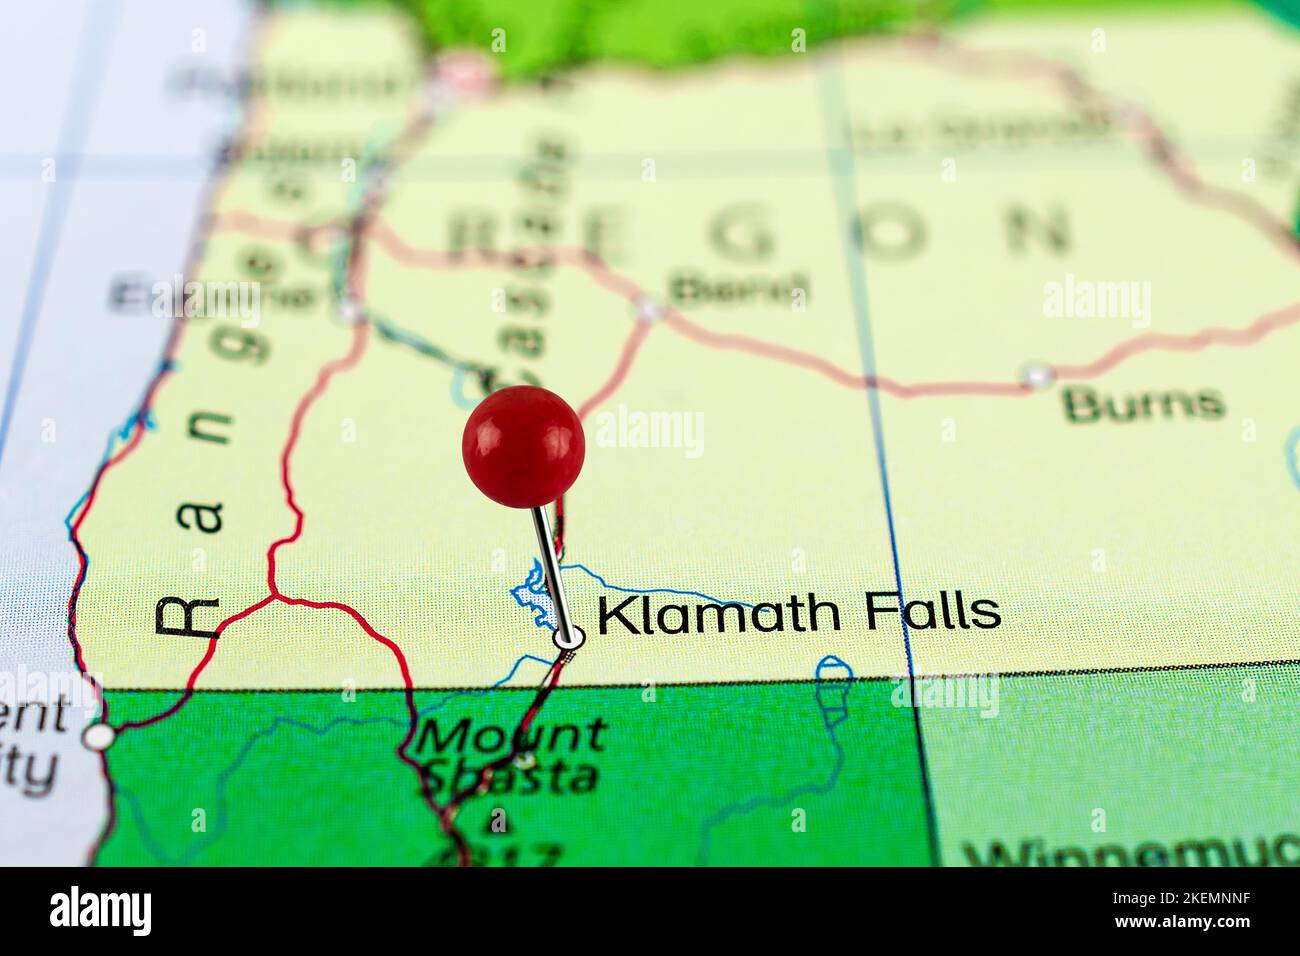 PIN-Karte zu Klamath Falls. Nahaufnahme der Klamath Falls Karte mit roter Nadel. Karte mit rotem Nadelpunkt von Klamath Falls in den USA. Stockfoto